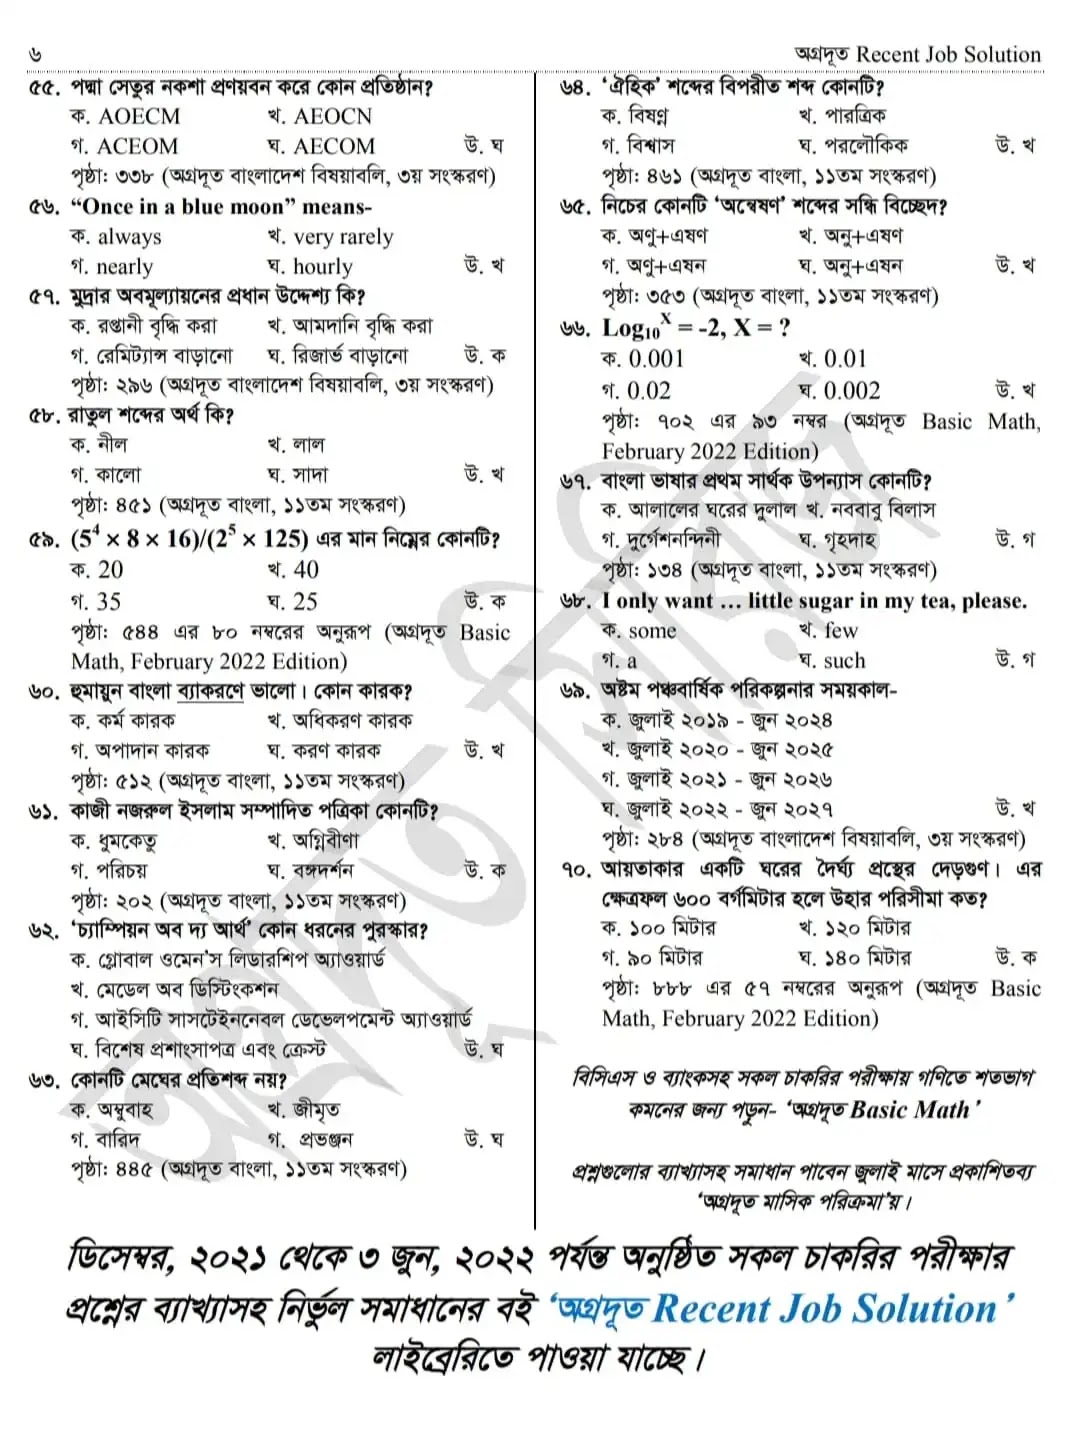 Bangladesh railway exam question pdf 2022